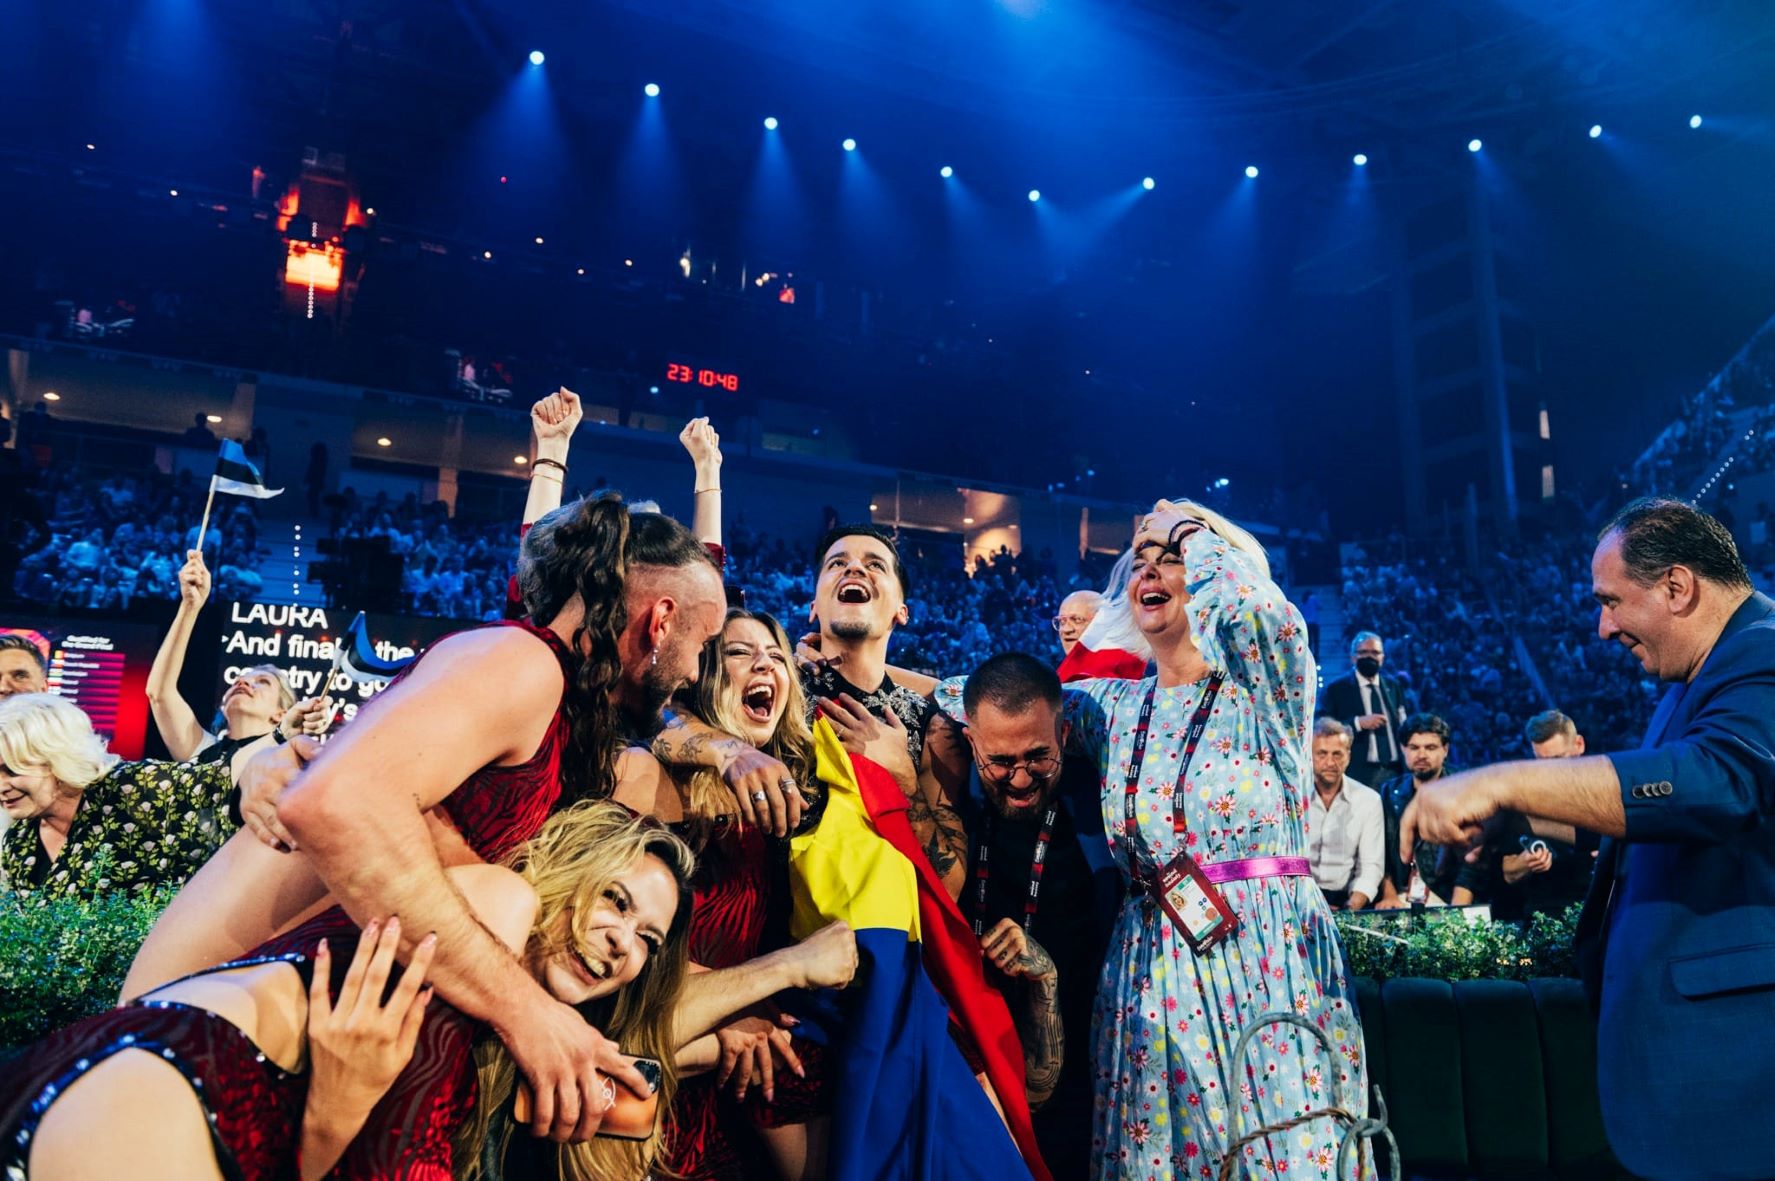 România sa calificat în finala concursului Eurovision 2022 cu melodia